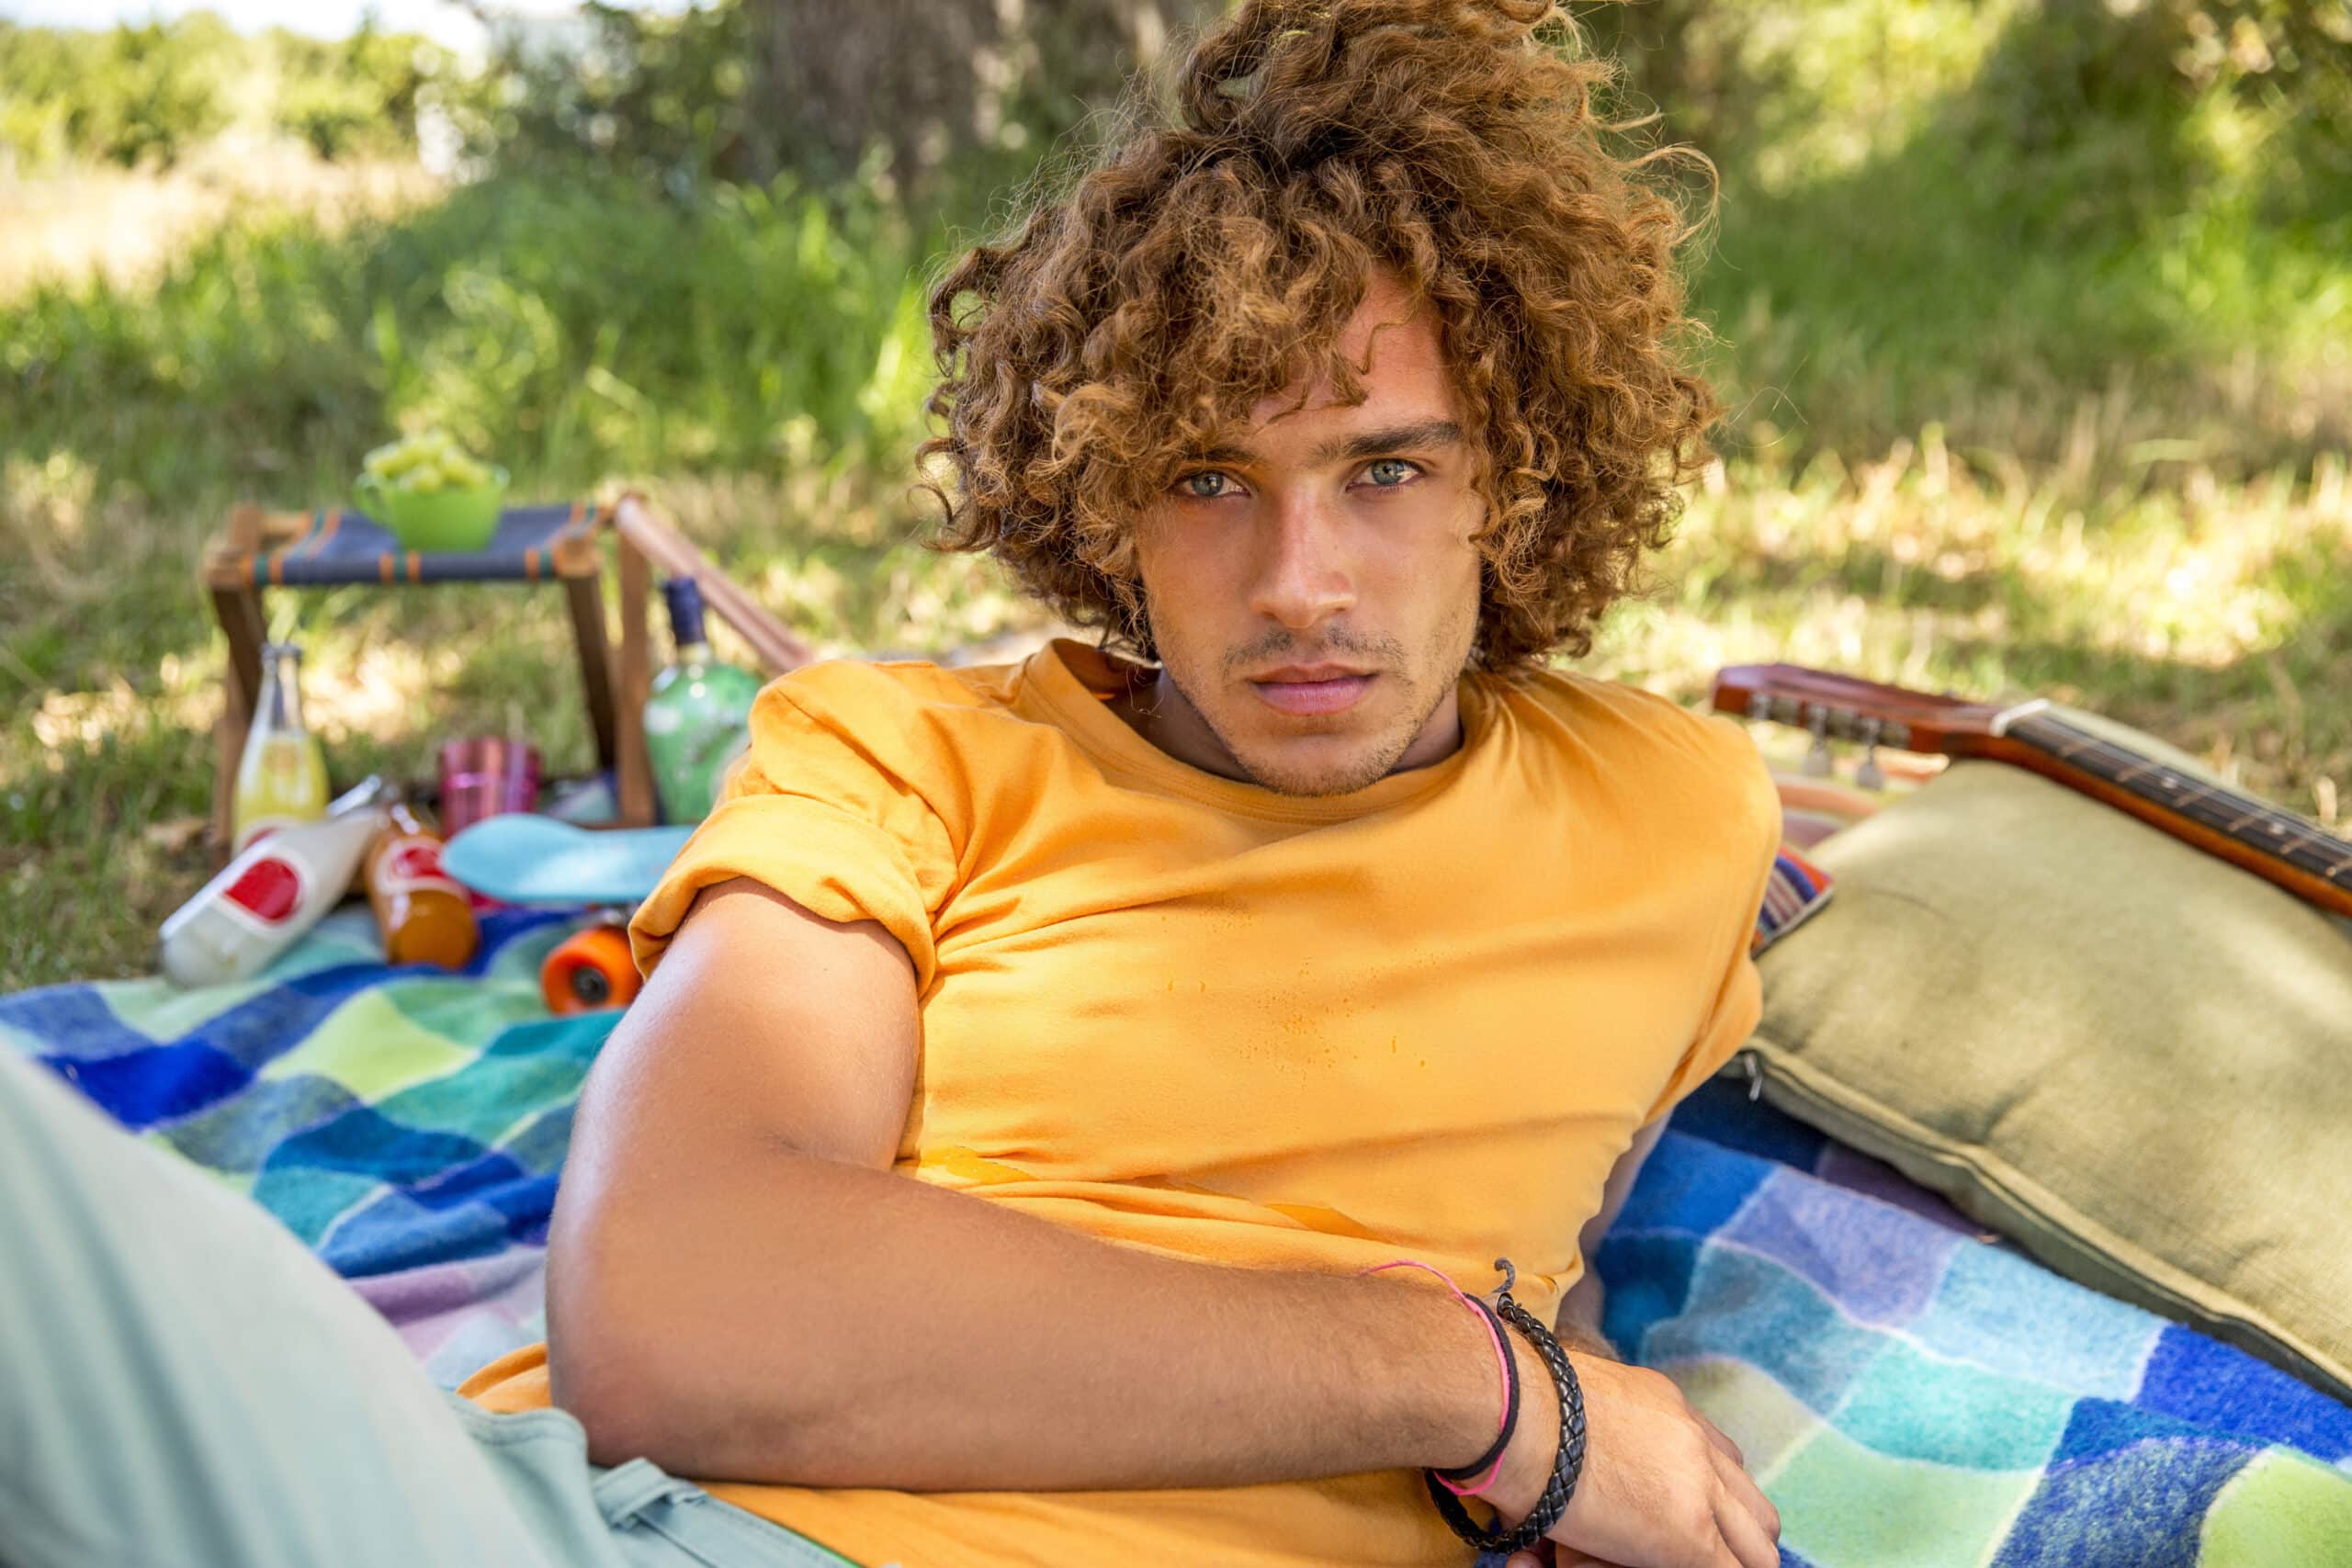 Ein junger Mann mit lockigem Haar und ernster Miene liegt auf einer bunten Decke in einem sonnigen Park, überall verstreut liegen Picknickutensilien. © Fotografie Tomas Rodriguez